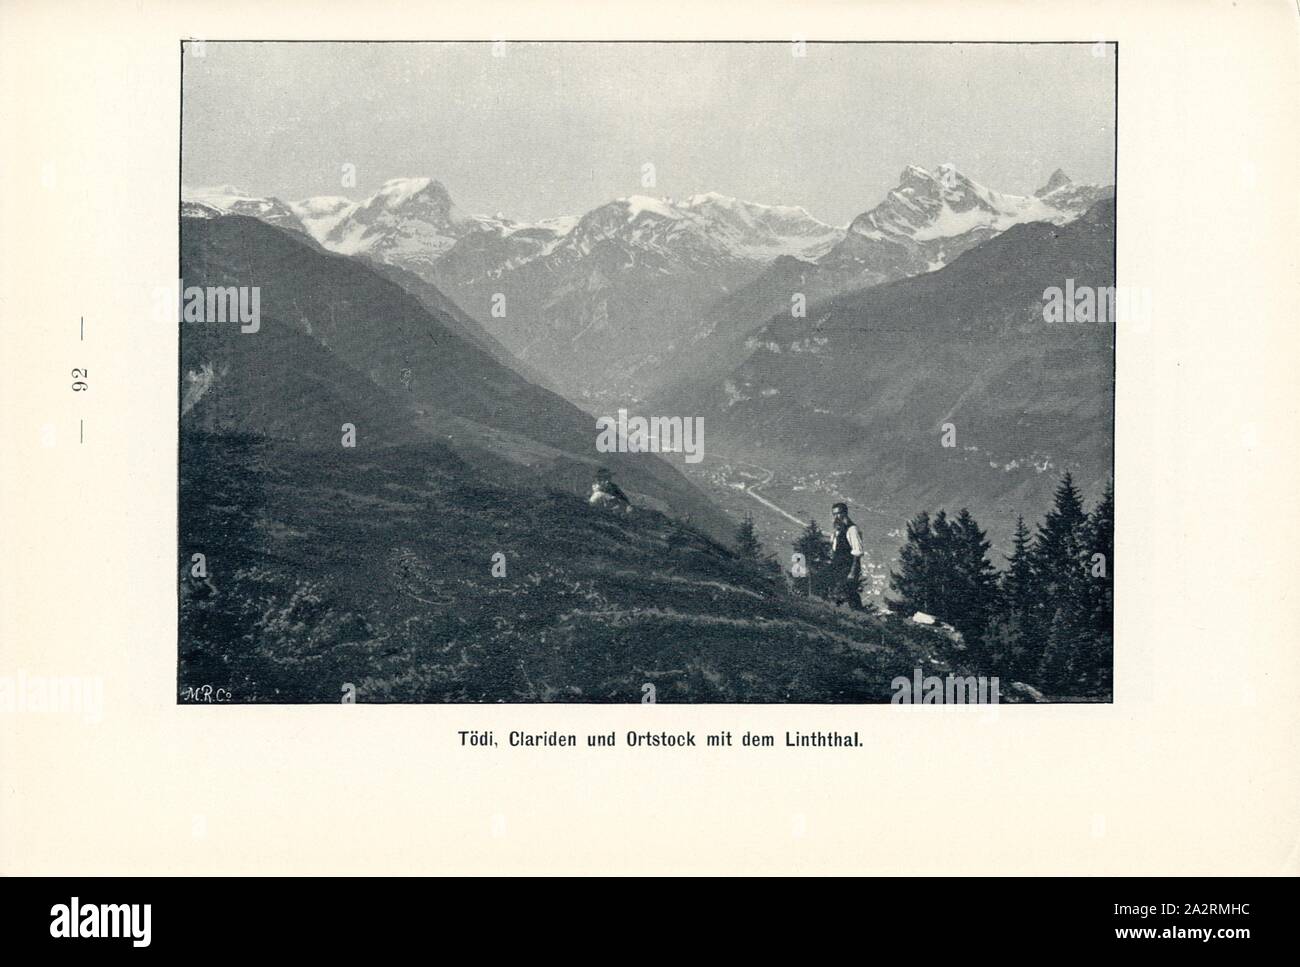 Tödi, Clariden and Ortstock with the Linthal, Alps near Linthal in Canton Glarus, Signed: M.R.C, Fig. 94, p. 92, Meisenbach, Riffarth und Co. (imp.), 1900, J. Knobel: Illustrierter Reisebegleiter für die Alpenstrasse des Klausen und ihre Zufahrtslinien. Glarus: Buchdruckerei J. Spälti, 1900 Stock Photo